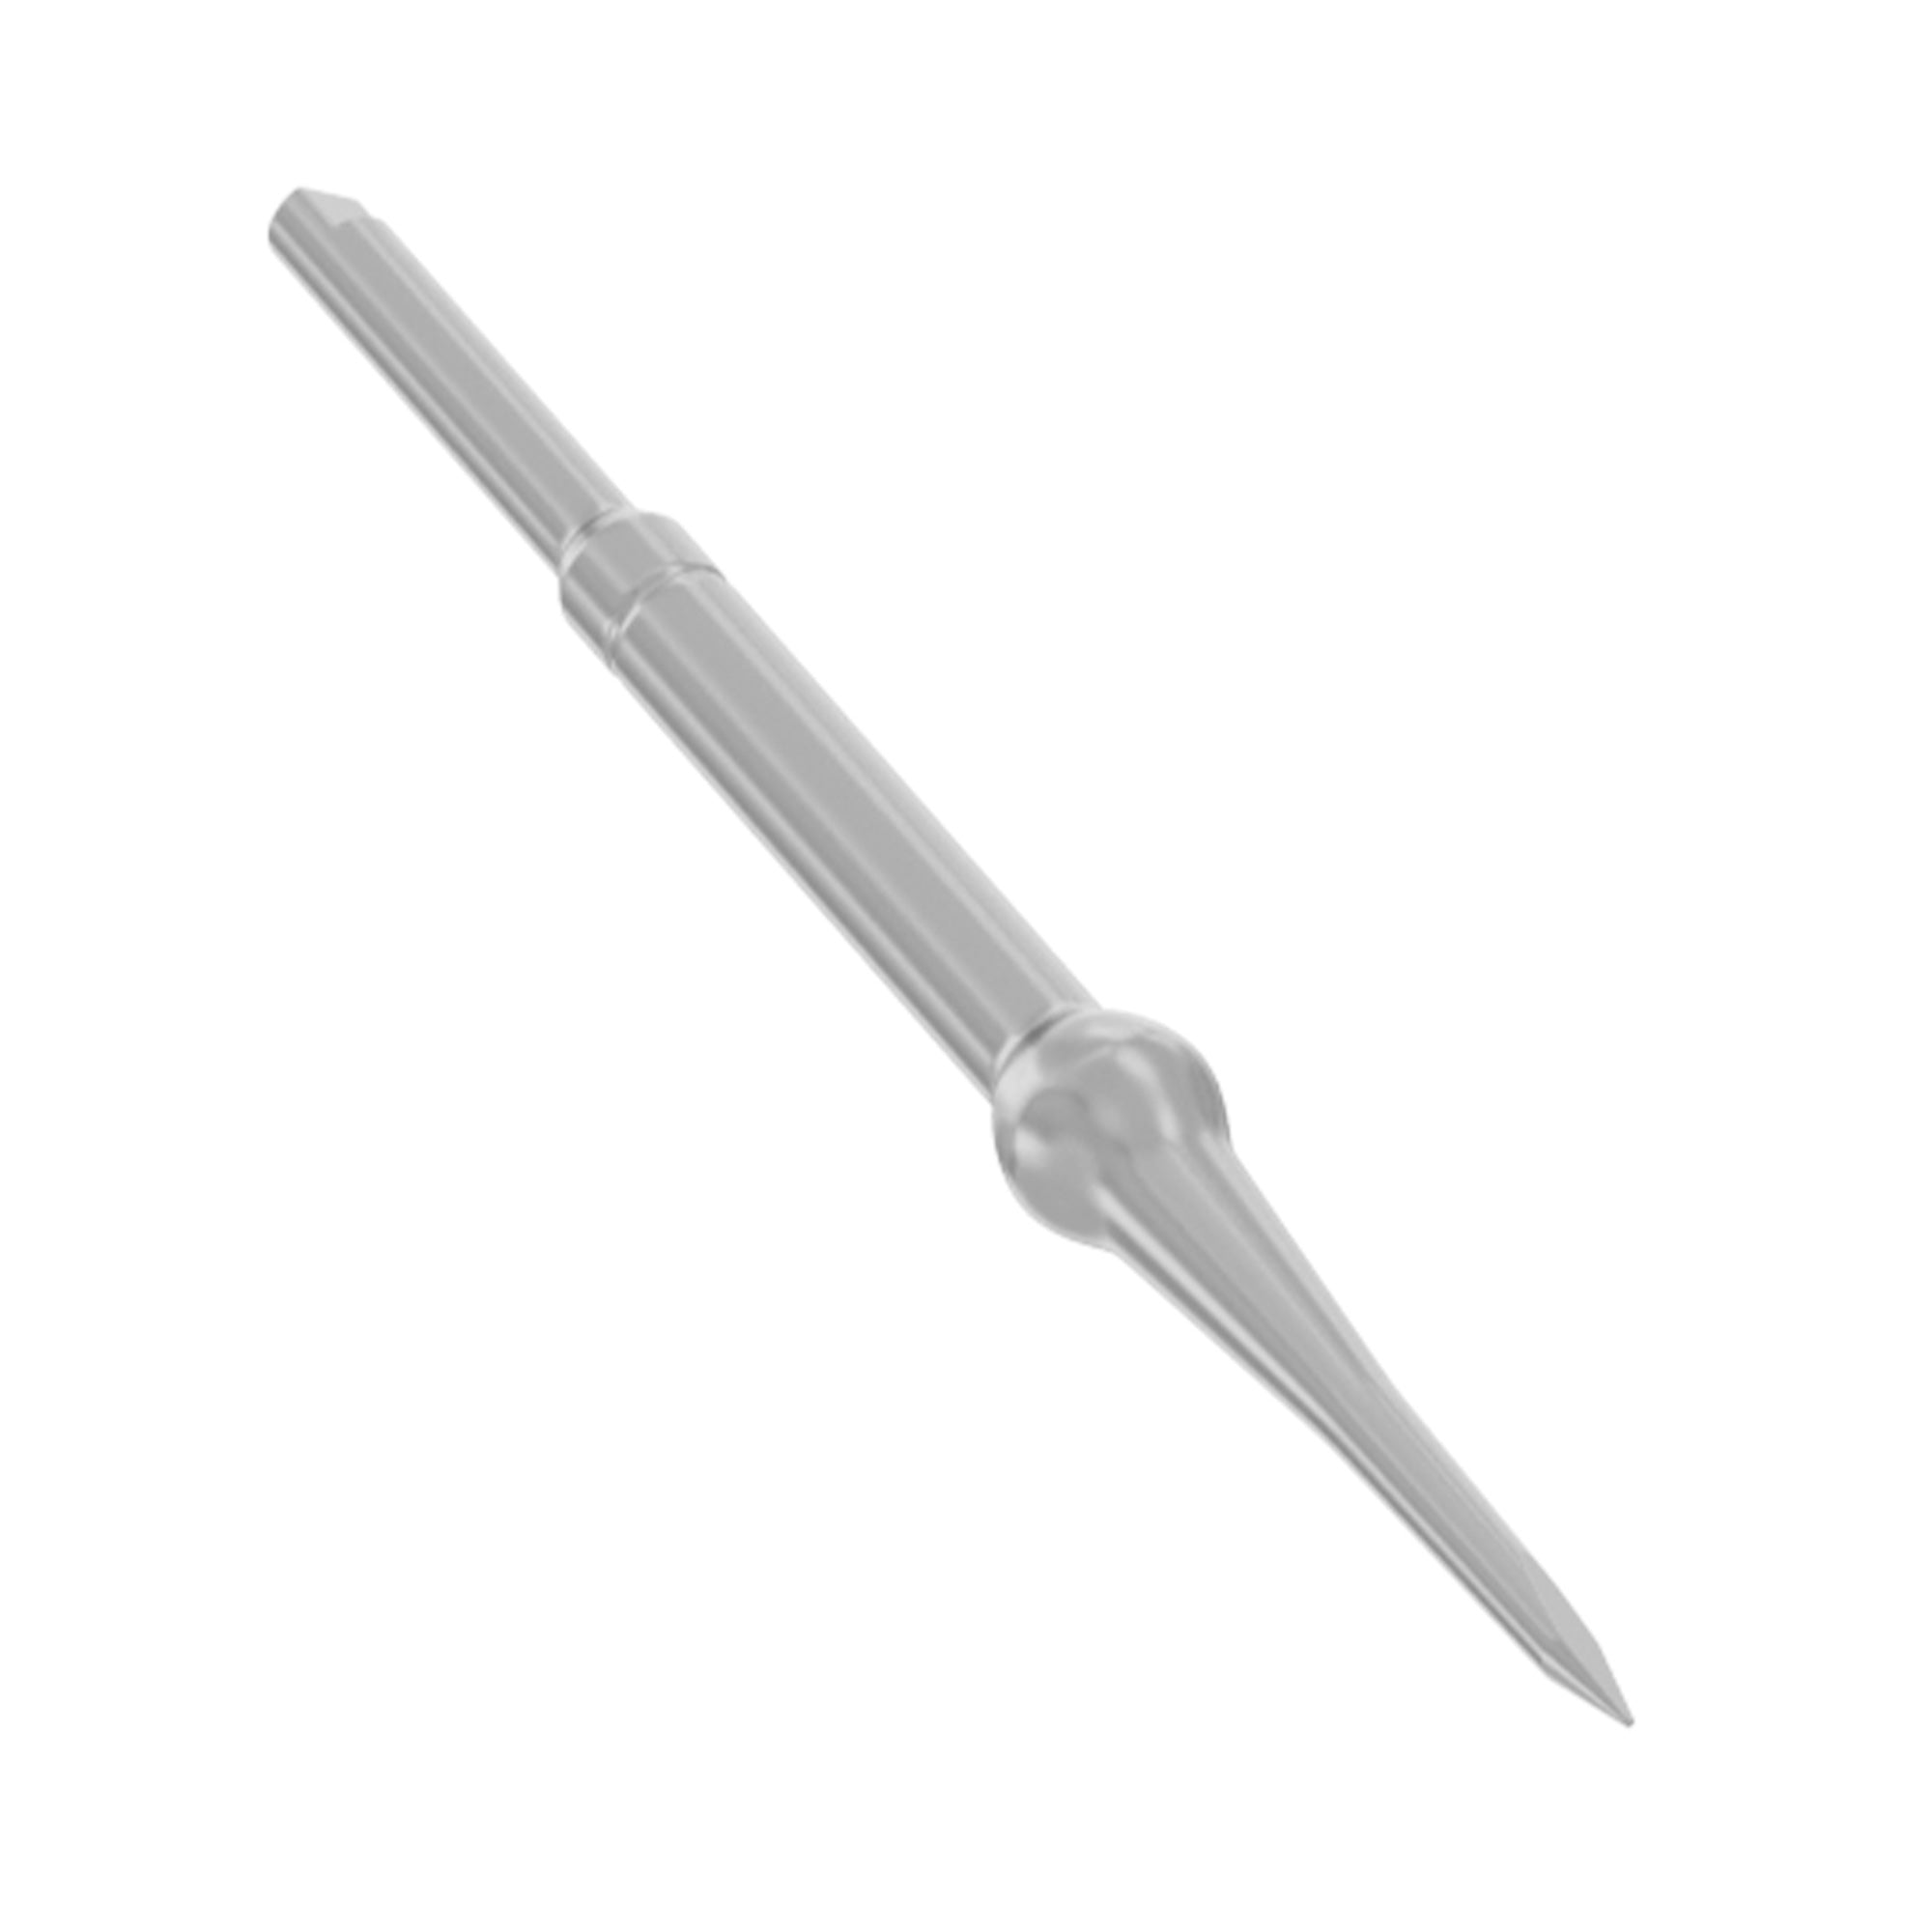 Morelli TAD Miniscrew Manual Spear Tip Initial Point Drill 41mm